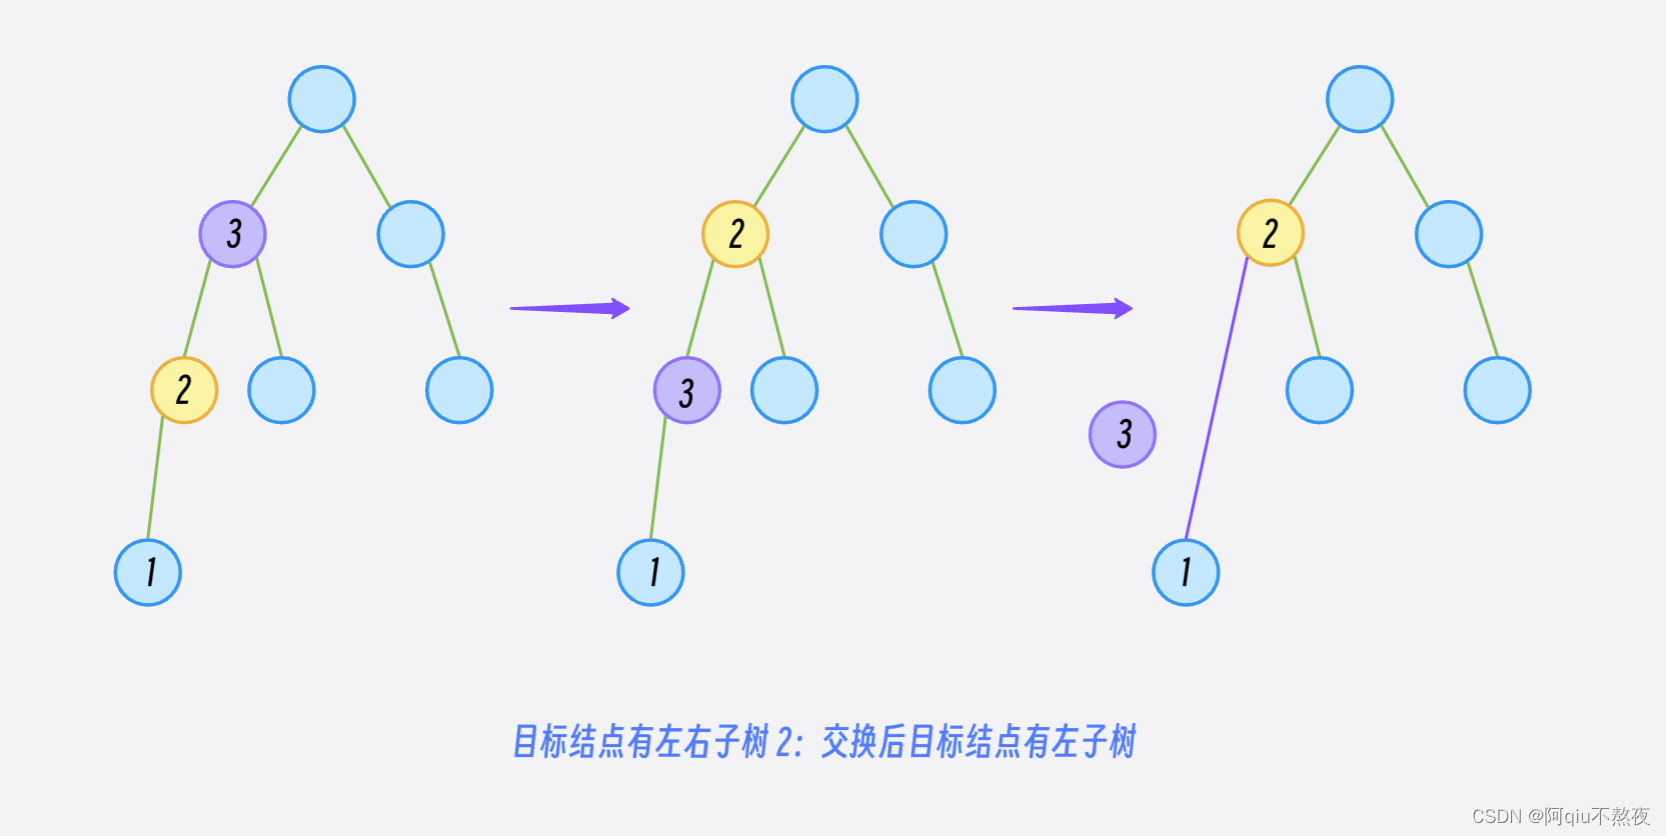 binary_search_tree的介绍与实现（二叉搜索树精美图示详解哦）